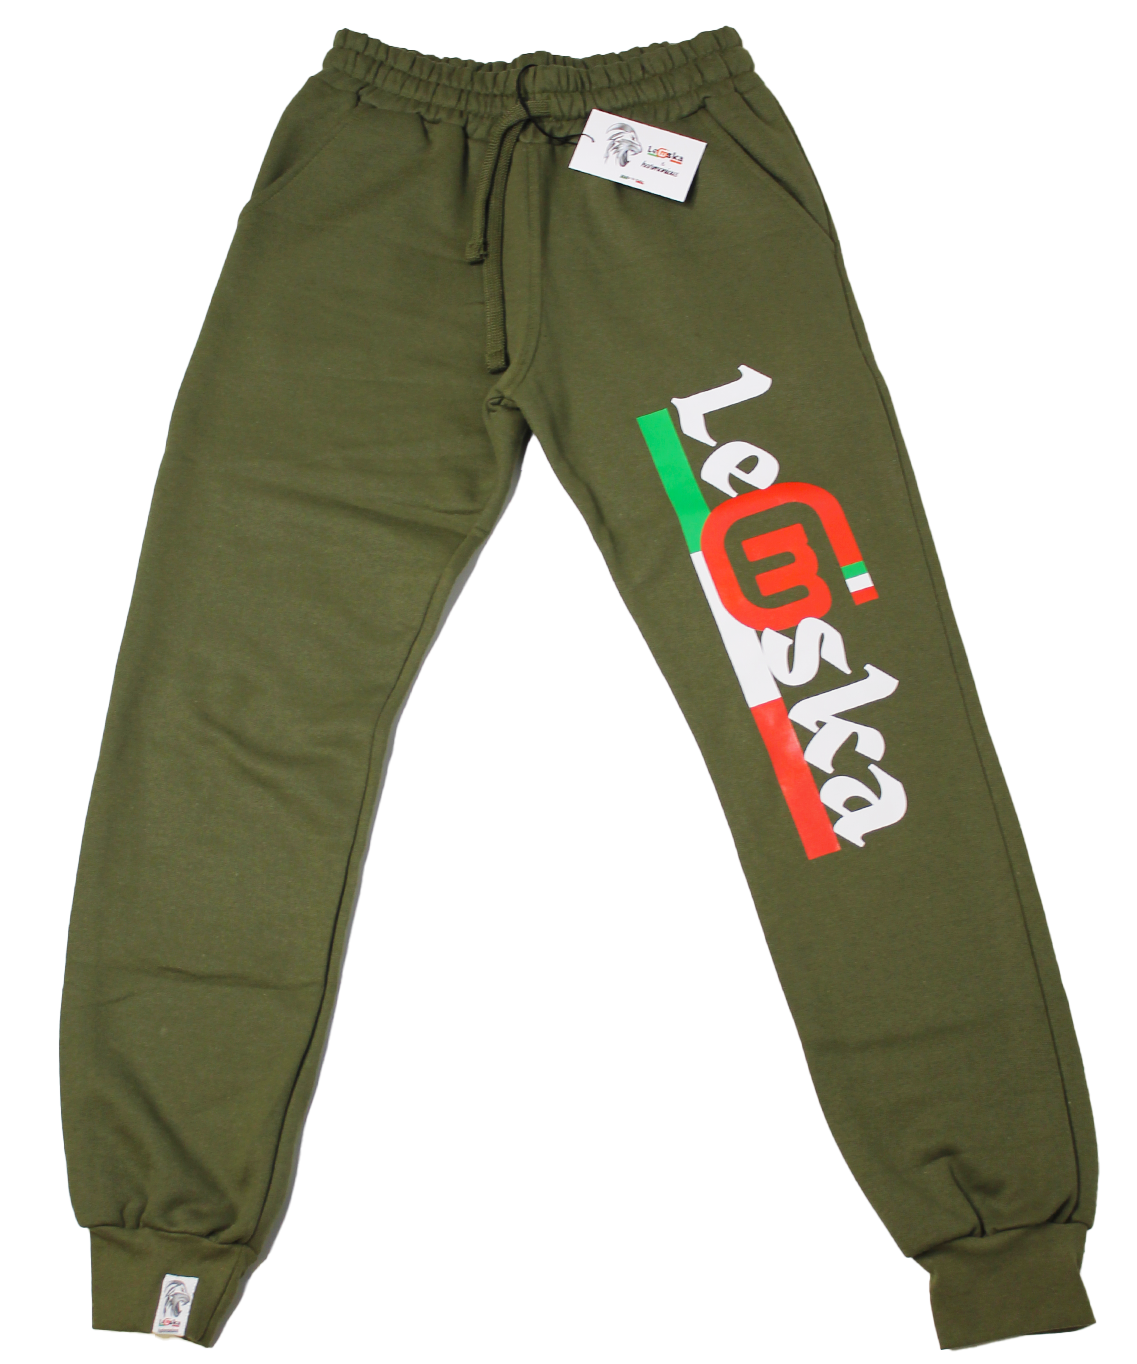 Pantalone tuta Leomska 100% Made in Italy